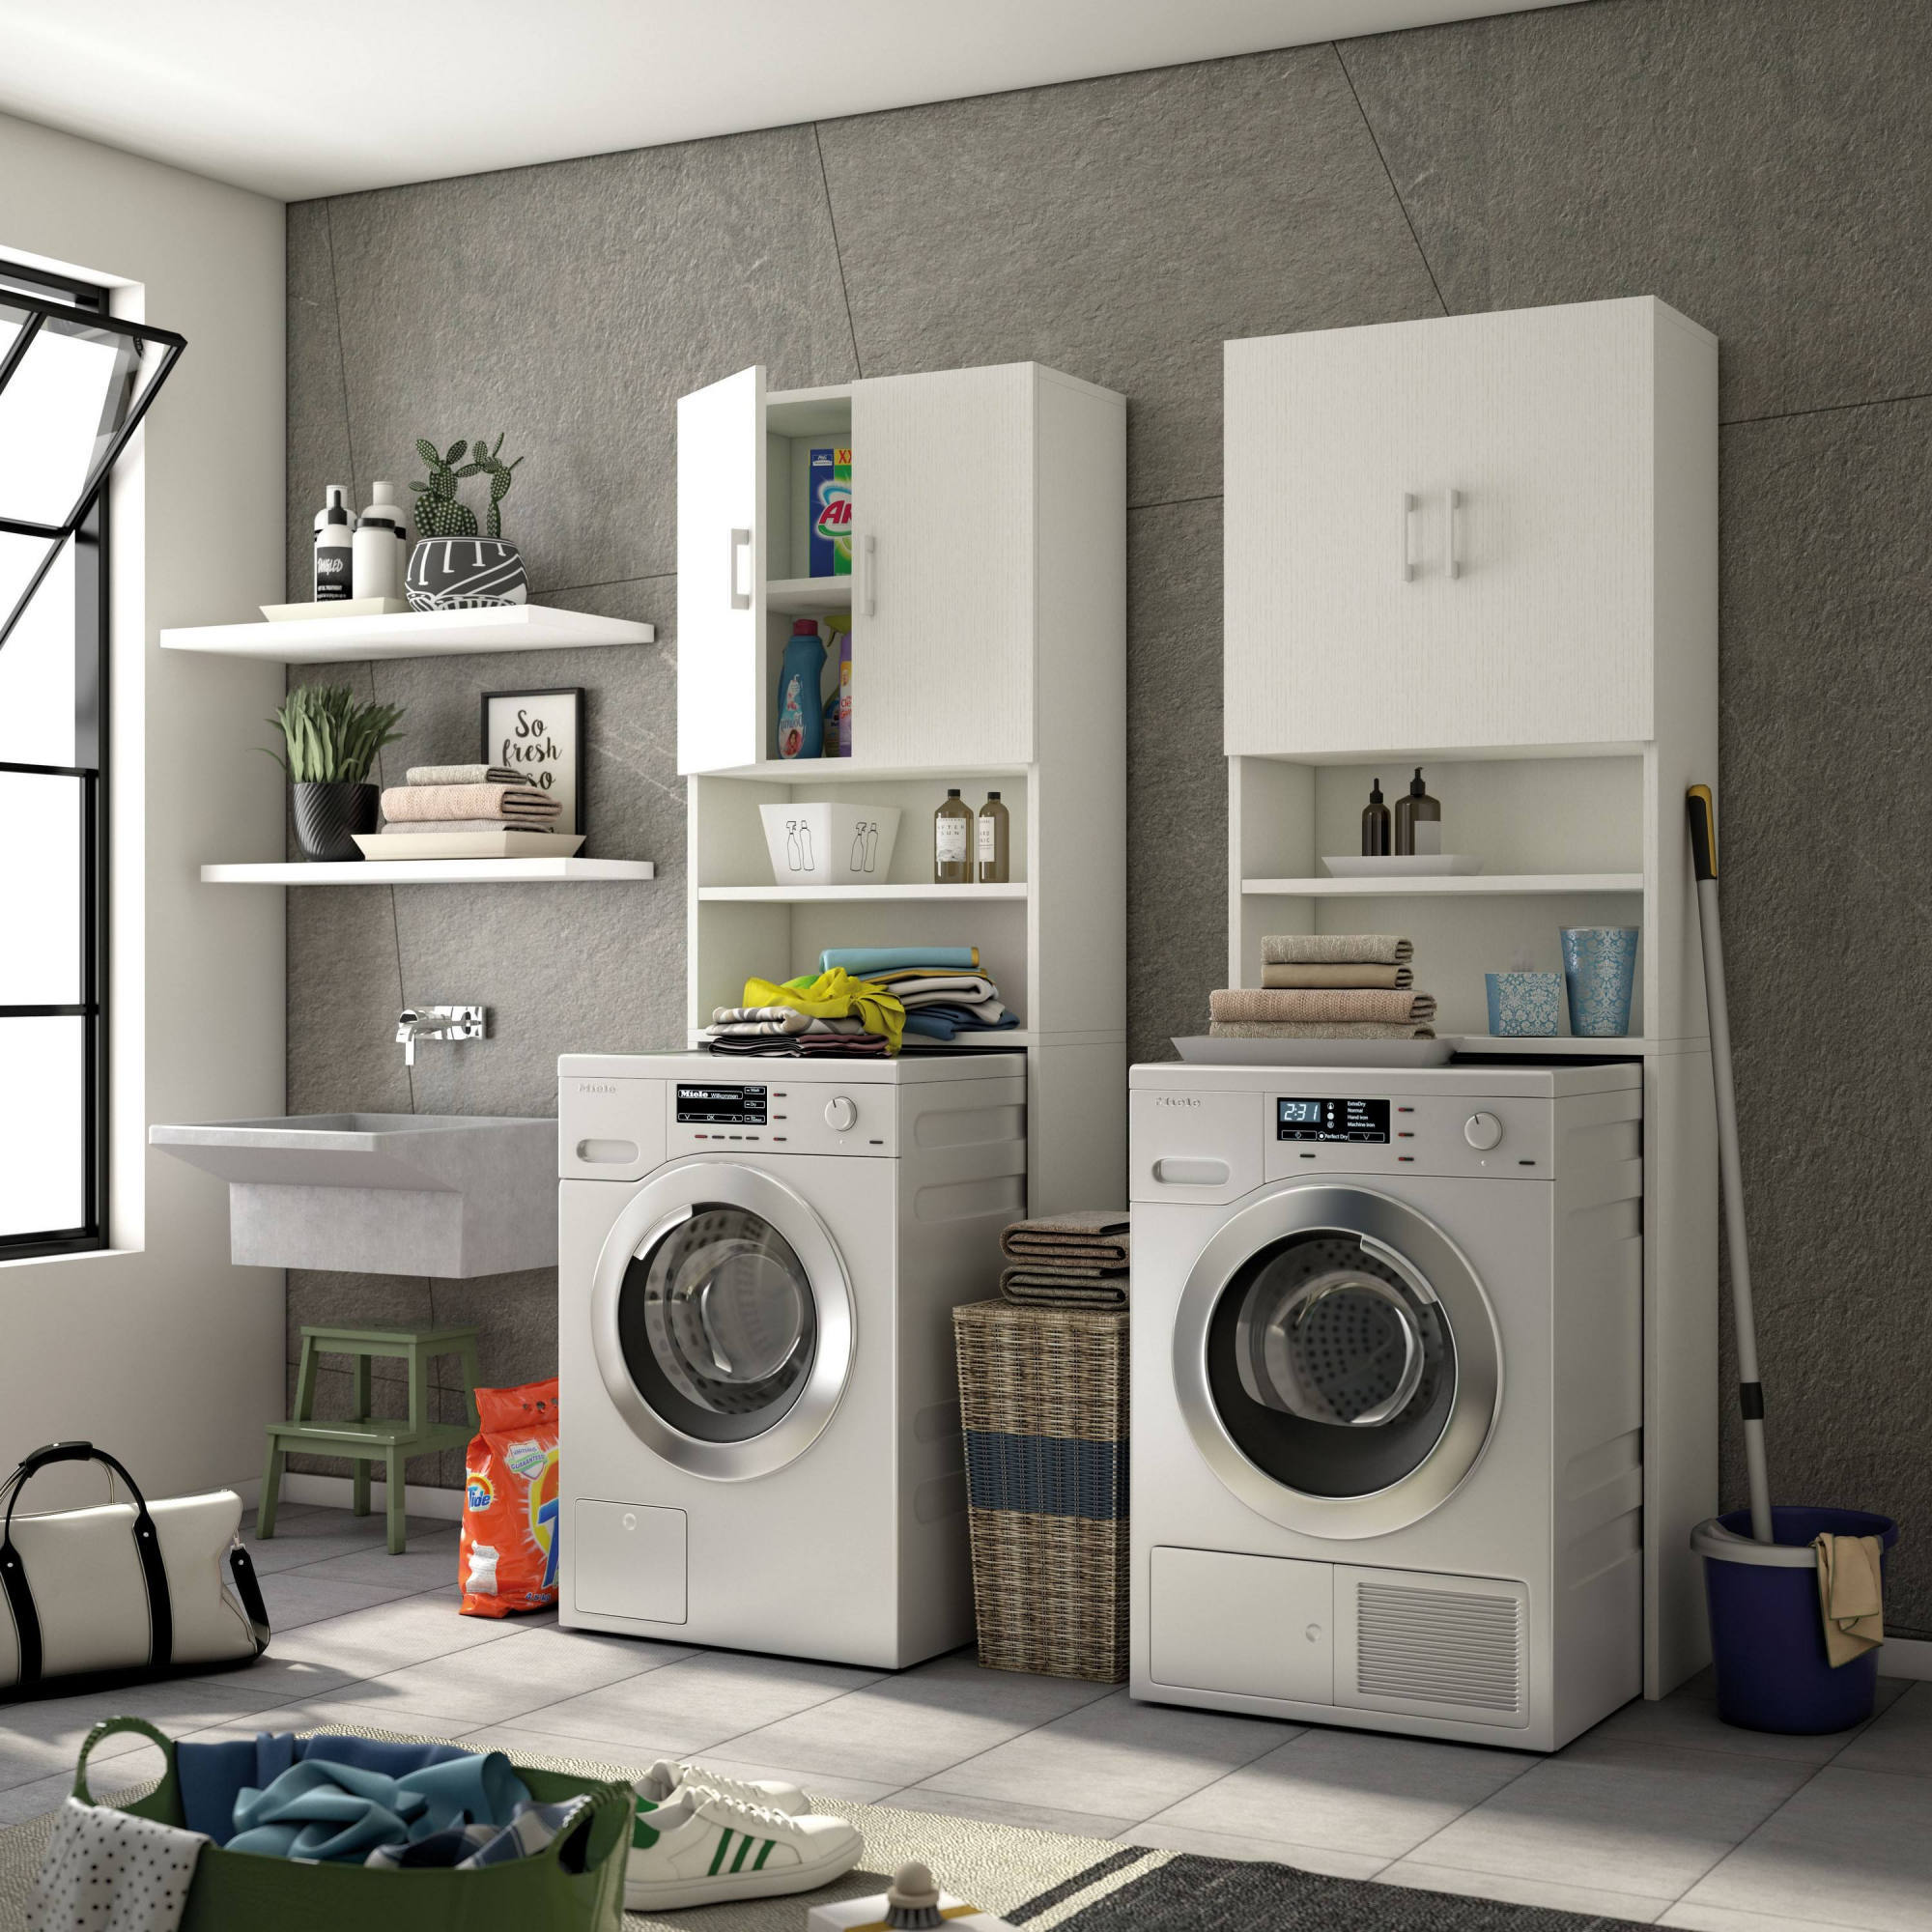 Lavandería casa: un espacio personalizado en orden Leroy Merlin